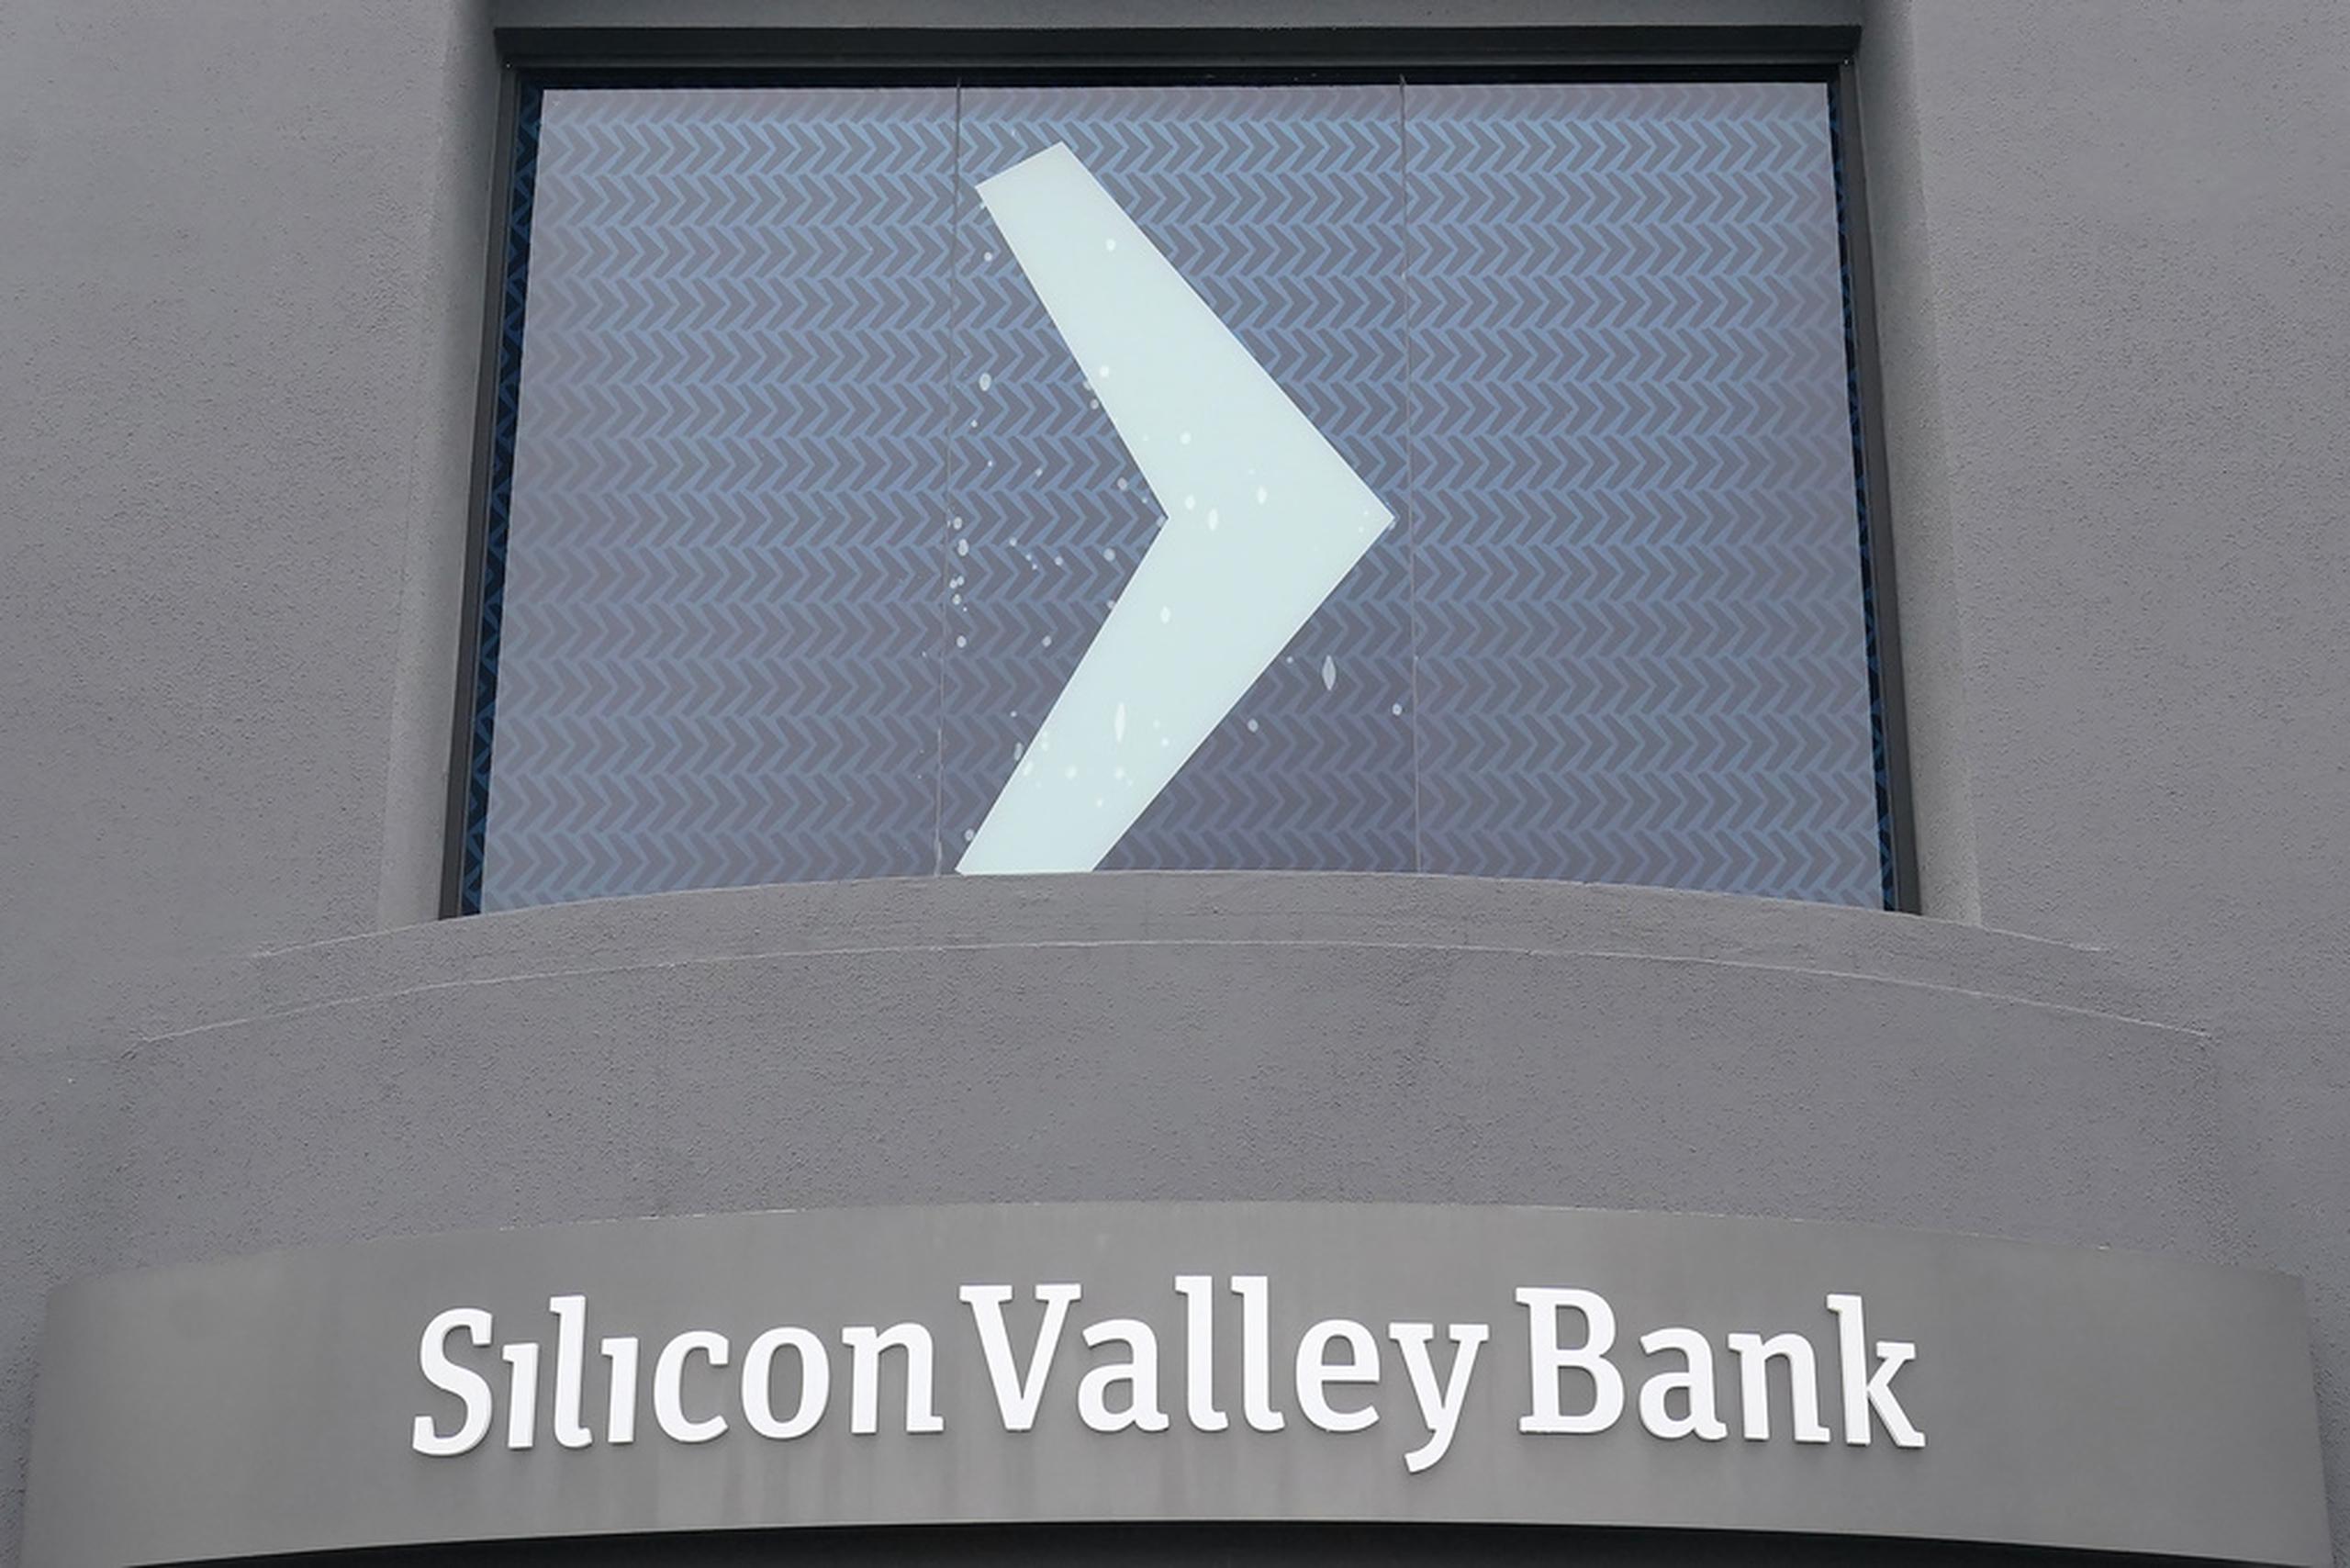 Silicon Valley Bank es el 16to banco más grande de Estados Unidos y ofrecía servicios principalmente a "startups" tecnológicas, empresas de capital de riesgo y empleados bien pagados de la industria tecnológica.